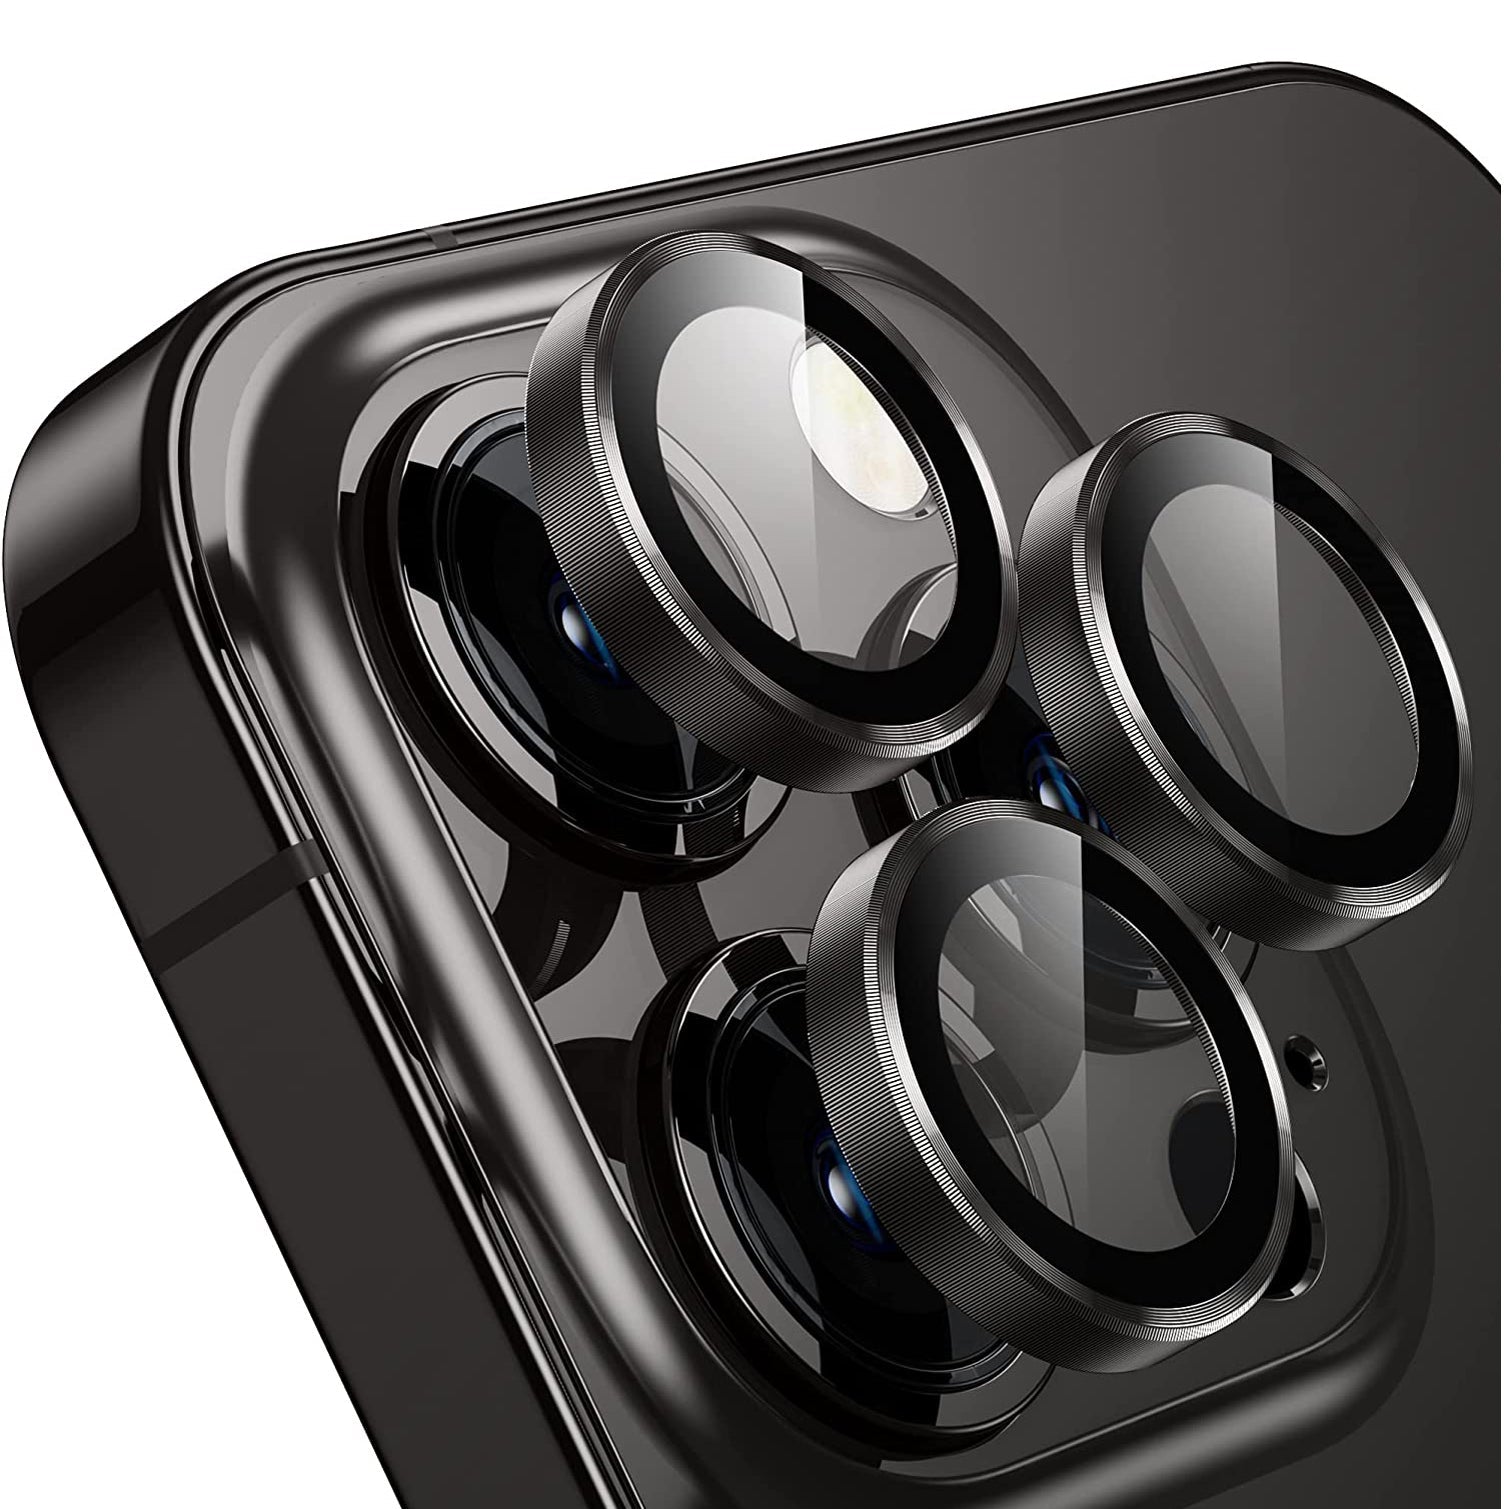 15 Pro Max Camera Lens Protector Black